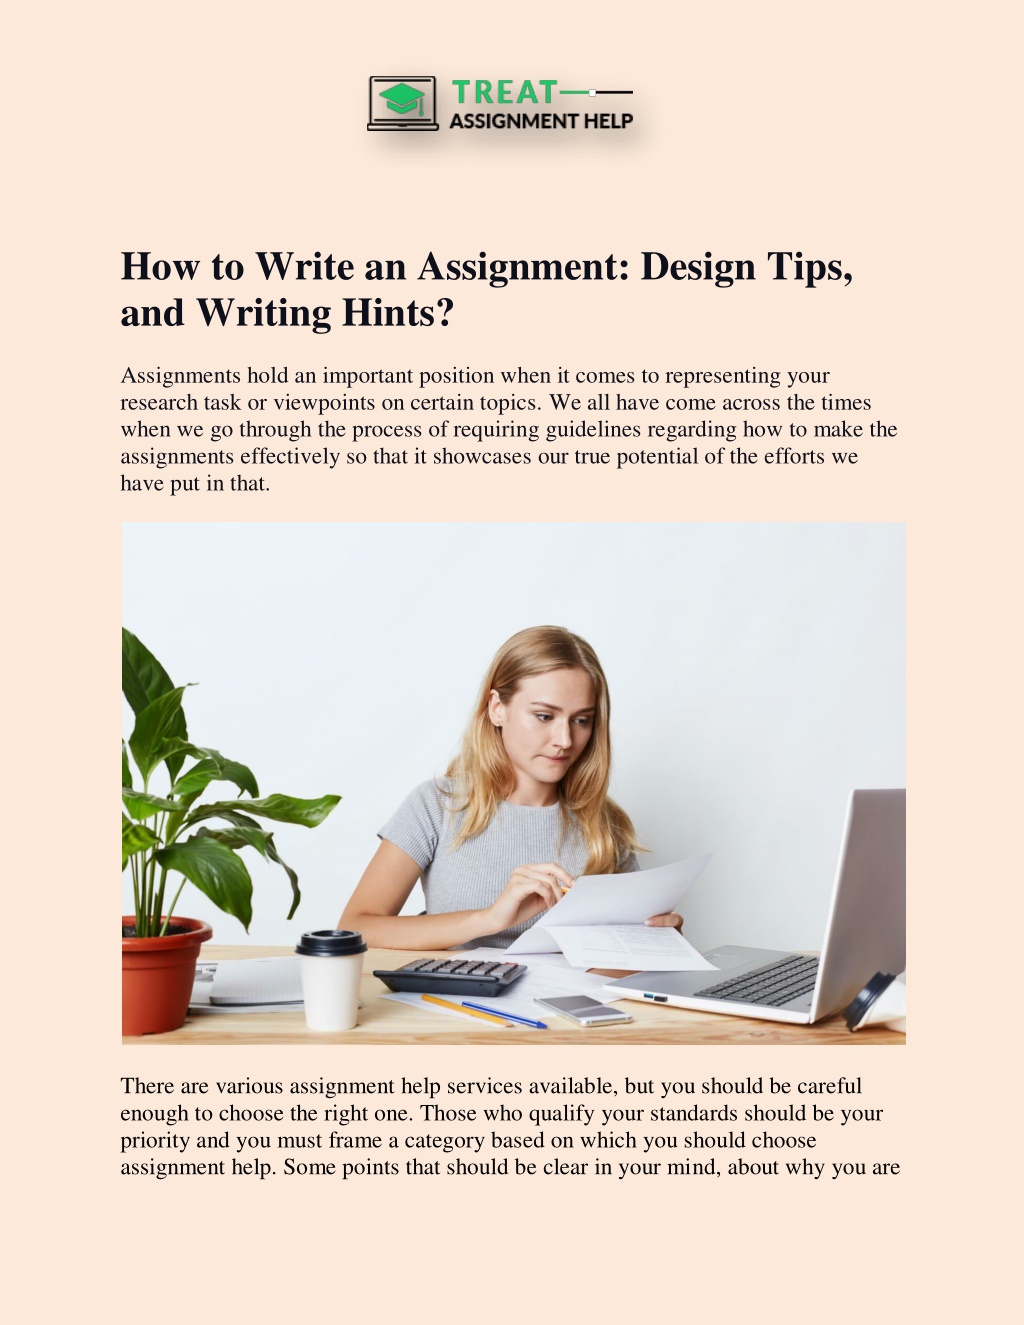 write assignment design